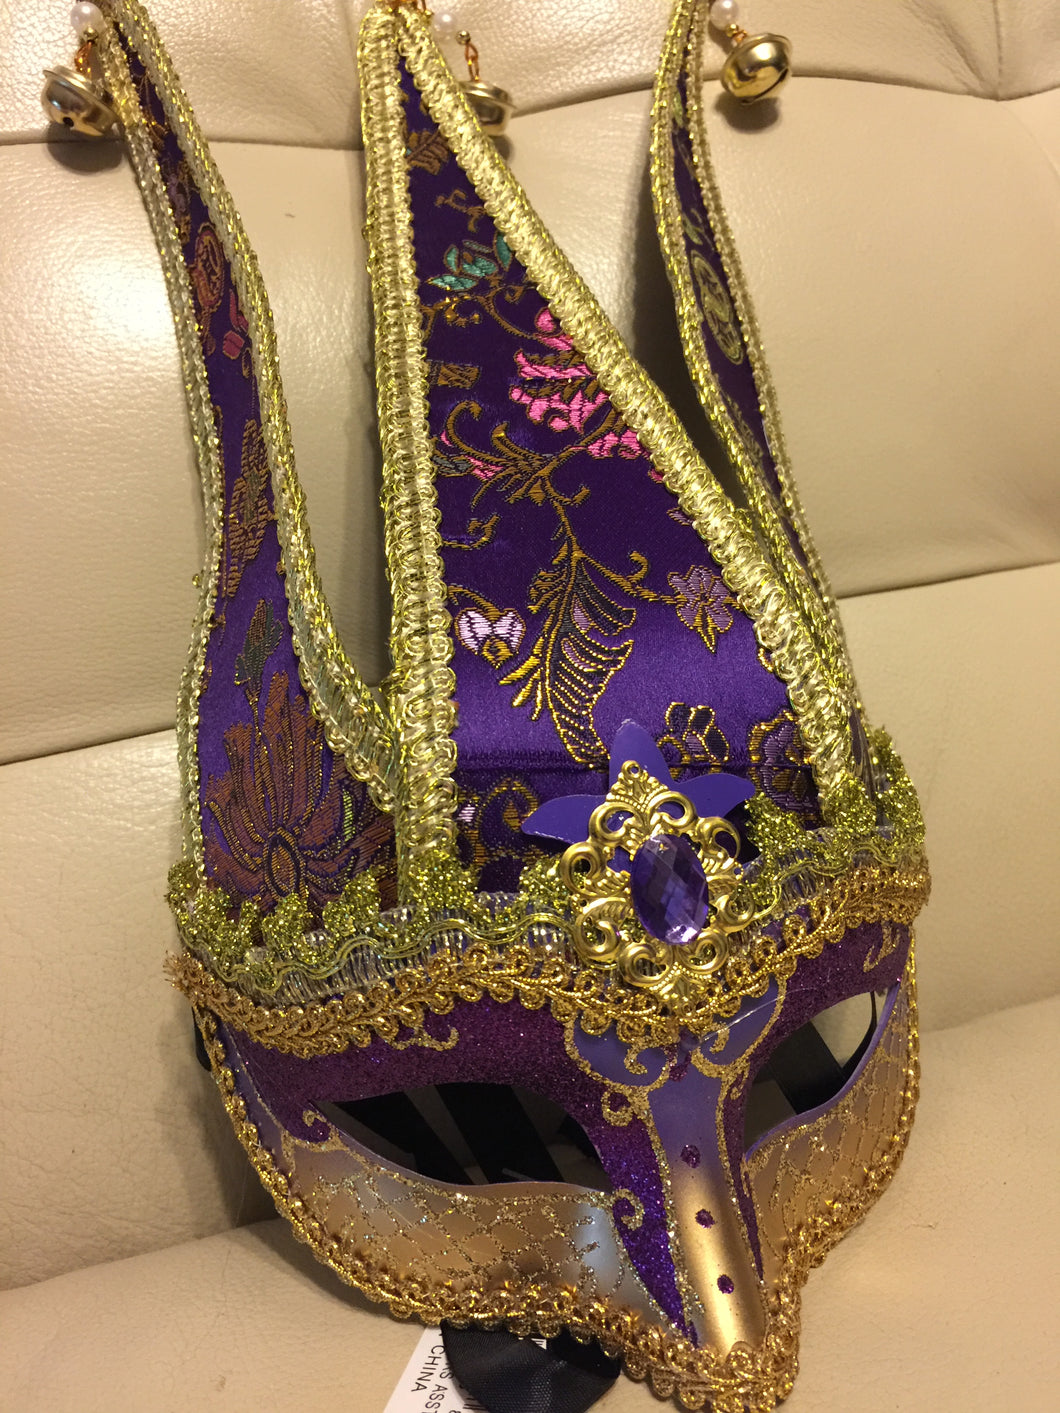 Playful Jester Mask